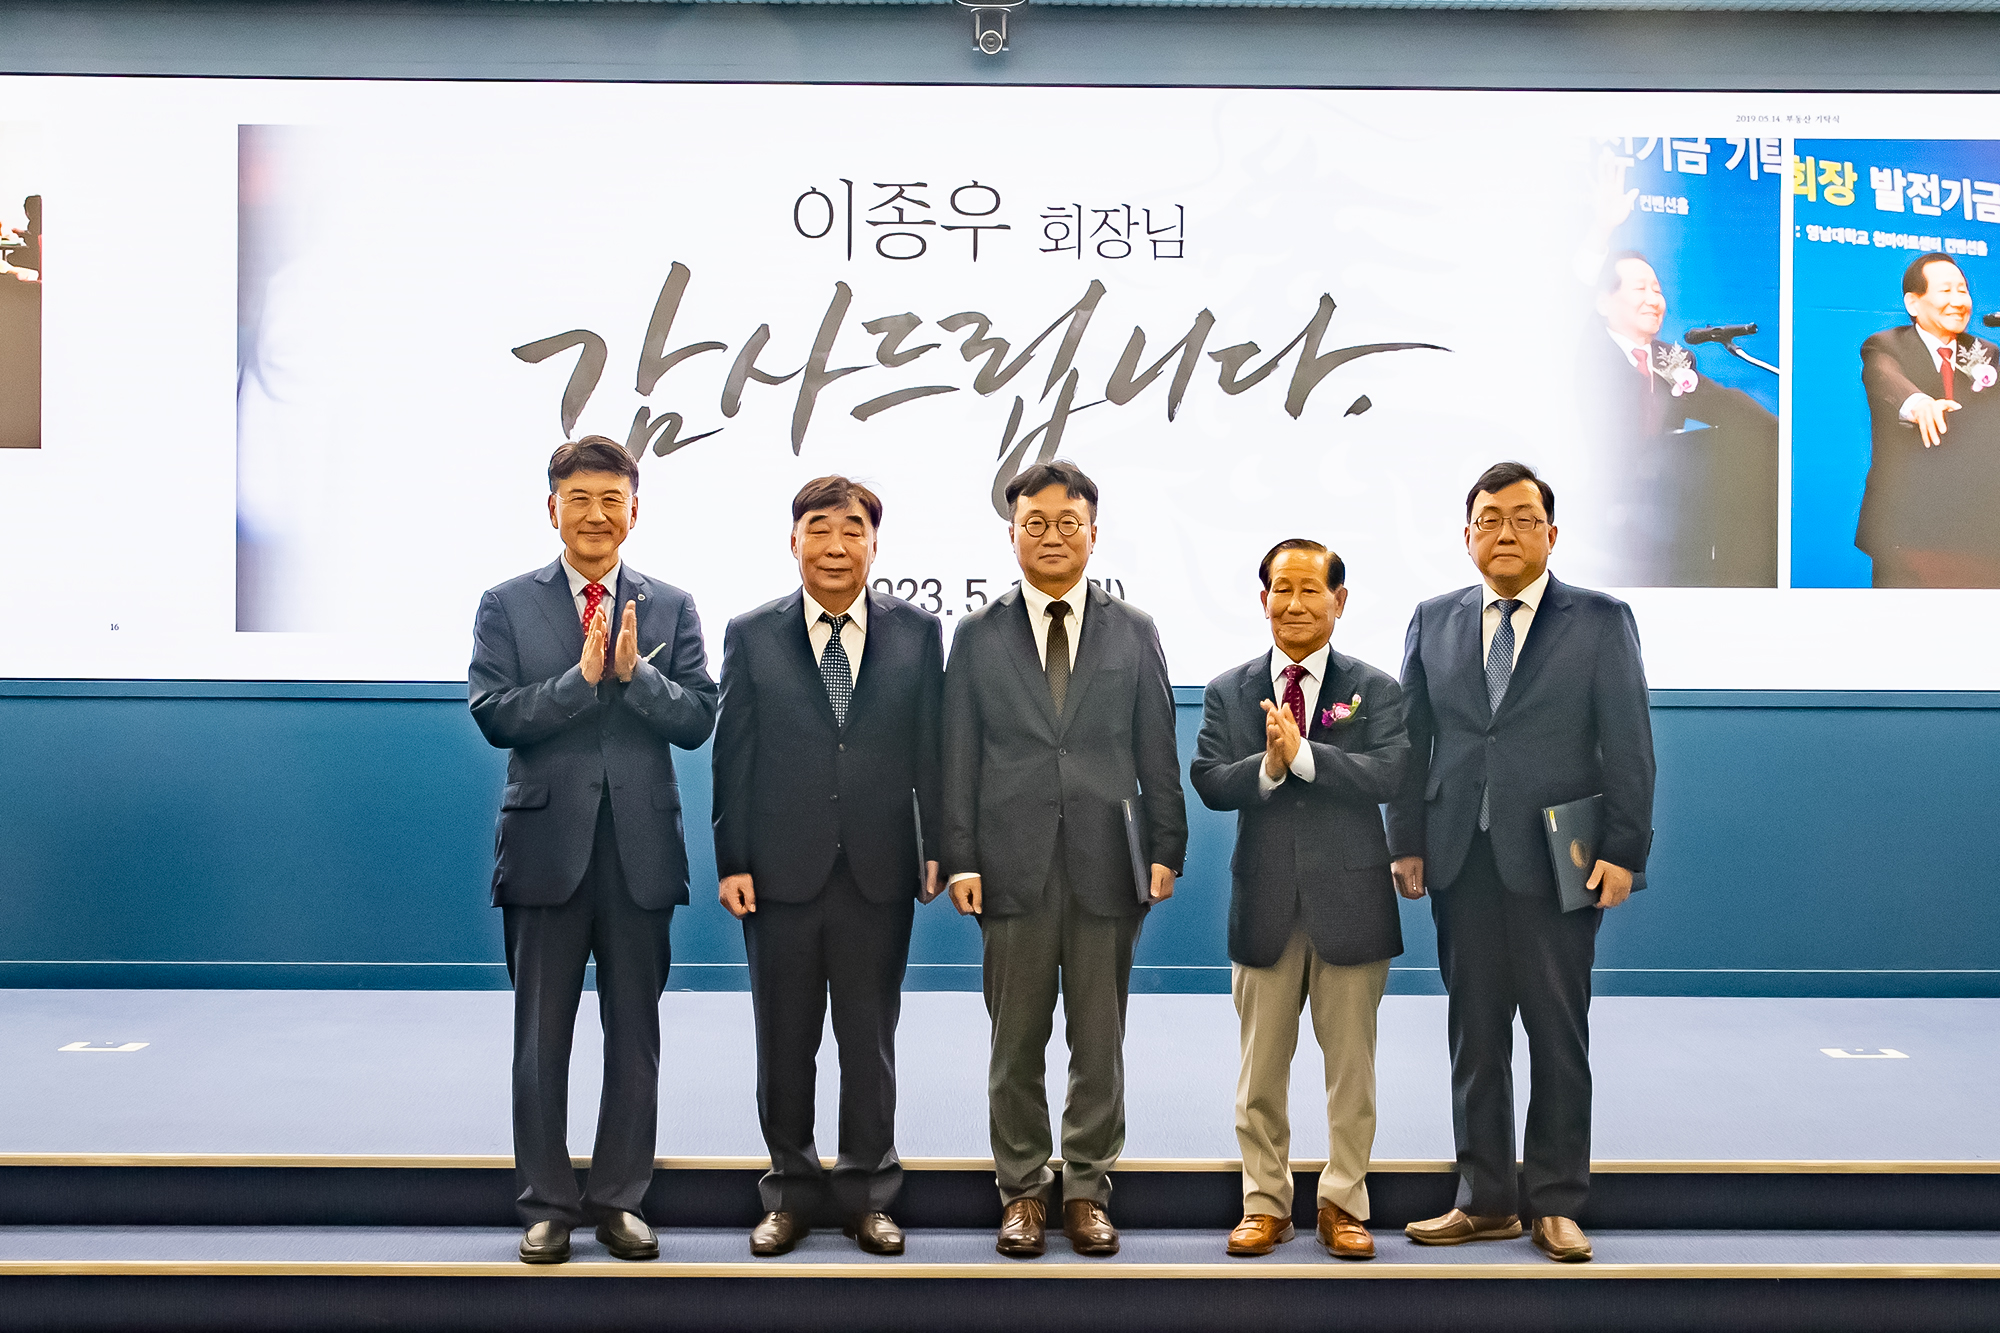 영남대 개교76주년 기념식 개최 “기계공학부 배철호 교수 송암이종우 공로대상 수상” 